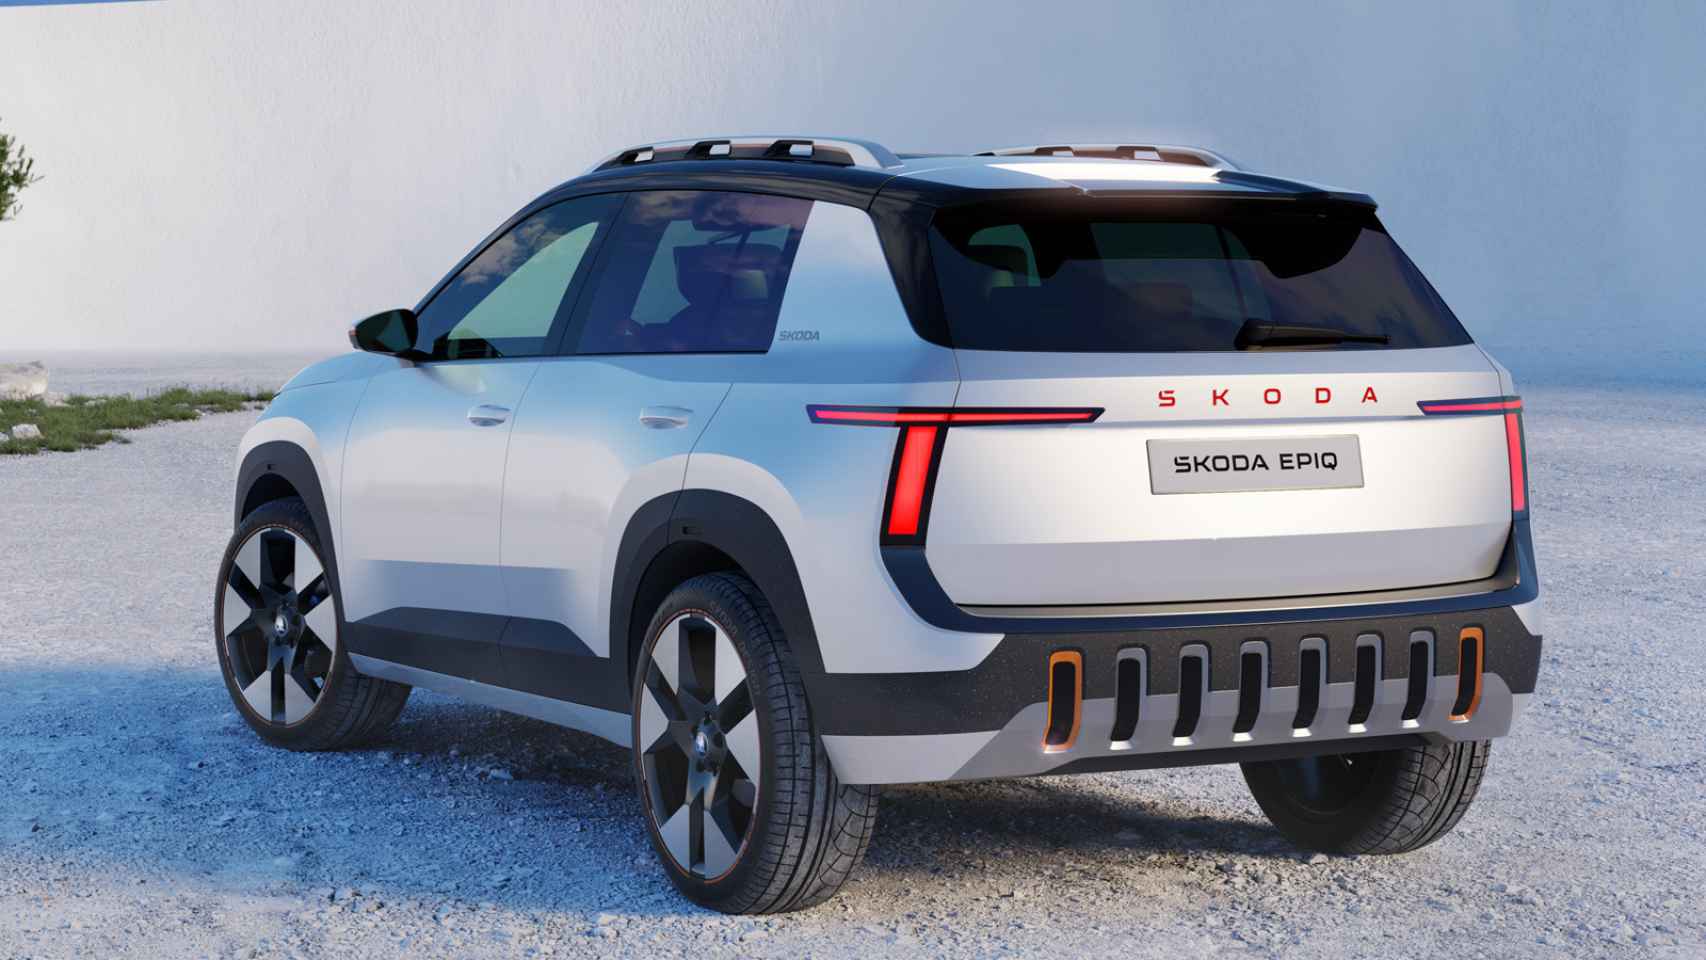 El Skoda Epiq es un SUV eléctrico que se fabricará en Navarra en 2025.